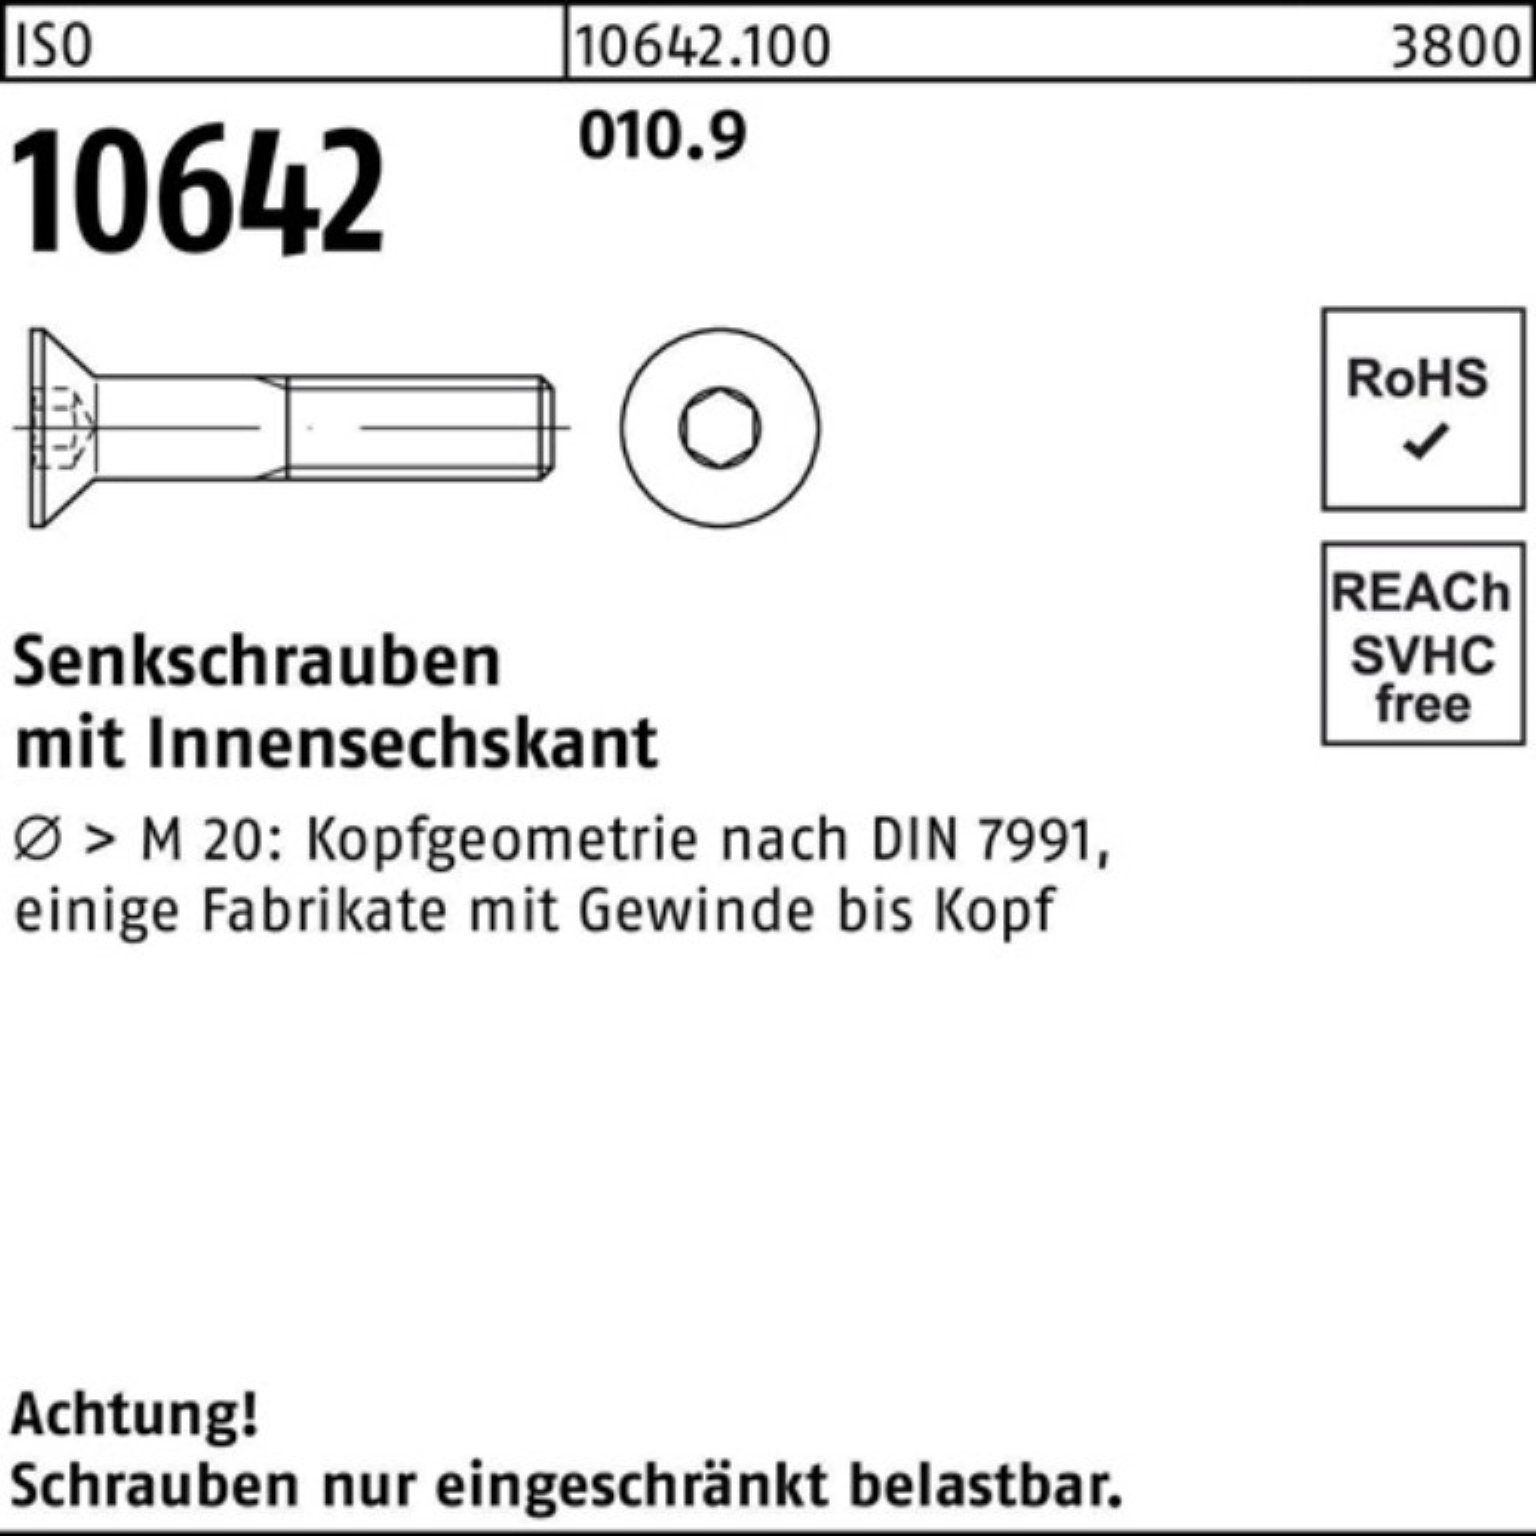 Pack 10642 Innen-6kt Senkschraube I 100 Senkschraube 100er 45 ISO Stück M12x Reyher 010.9